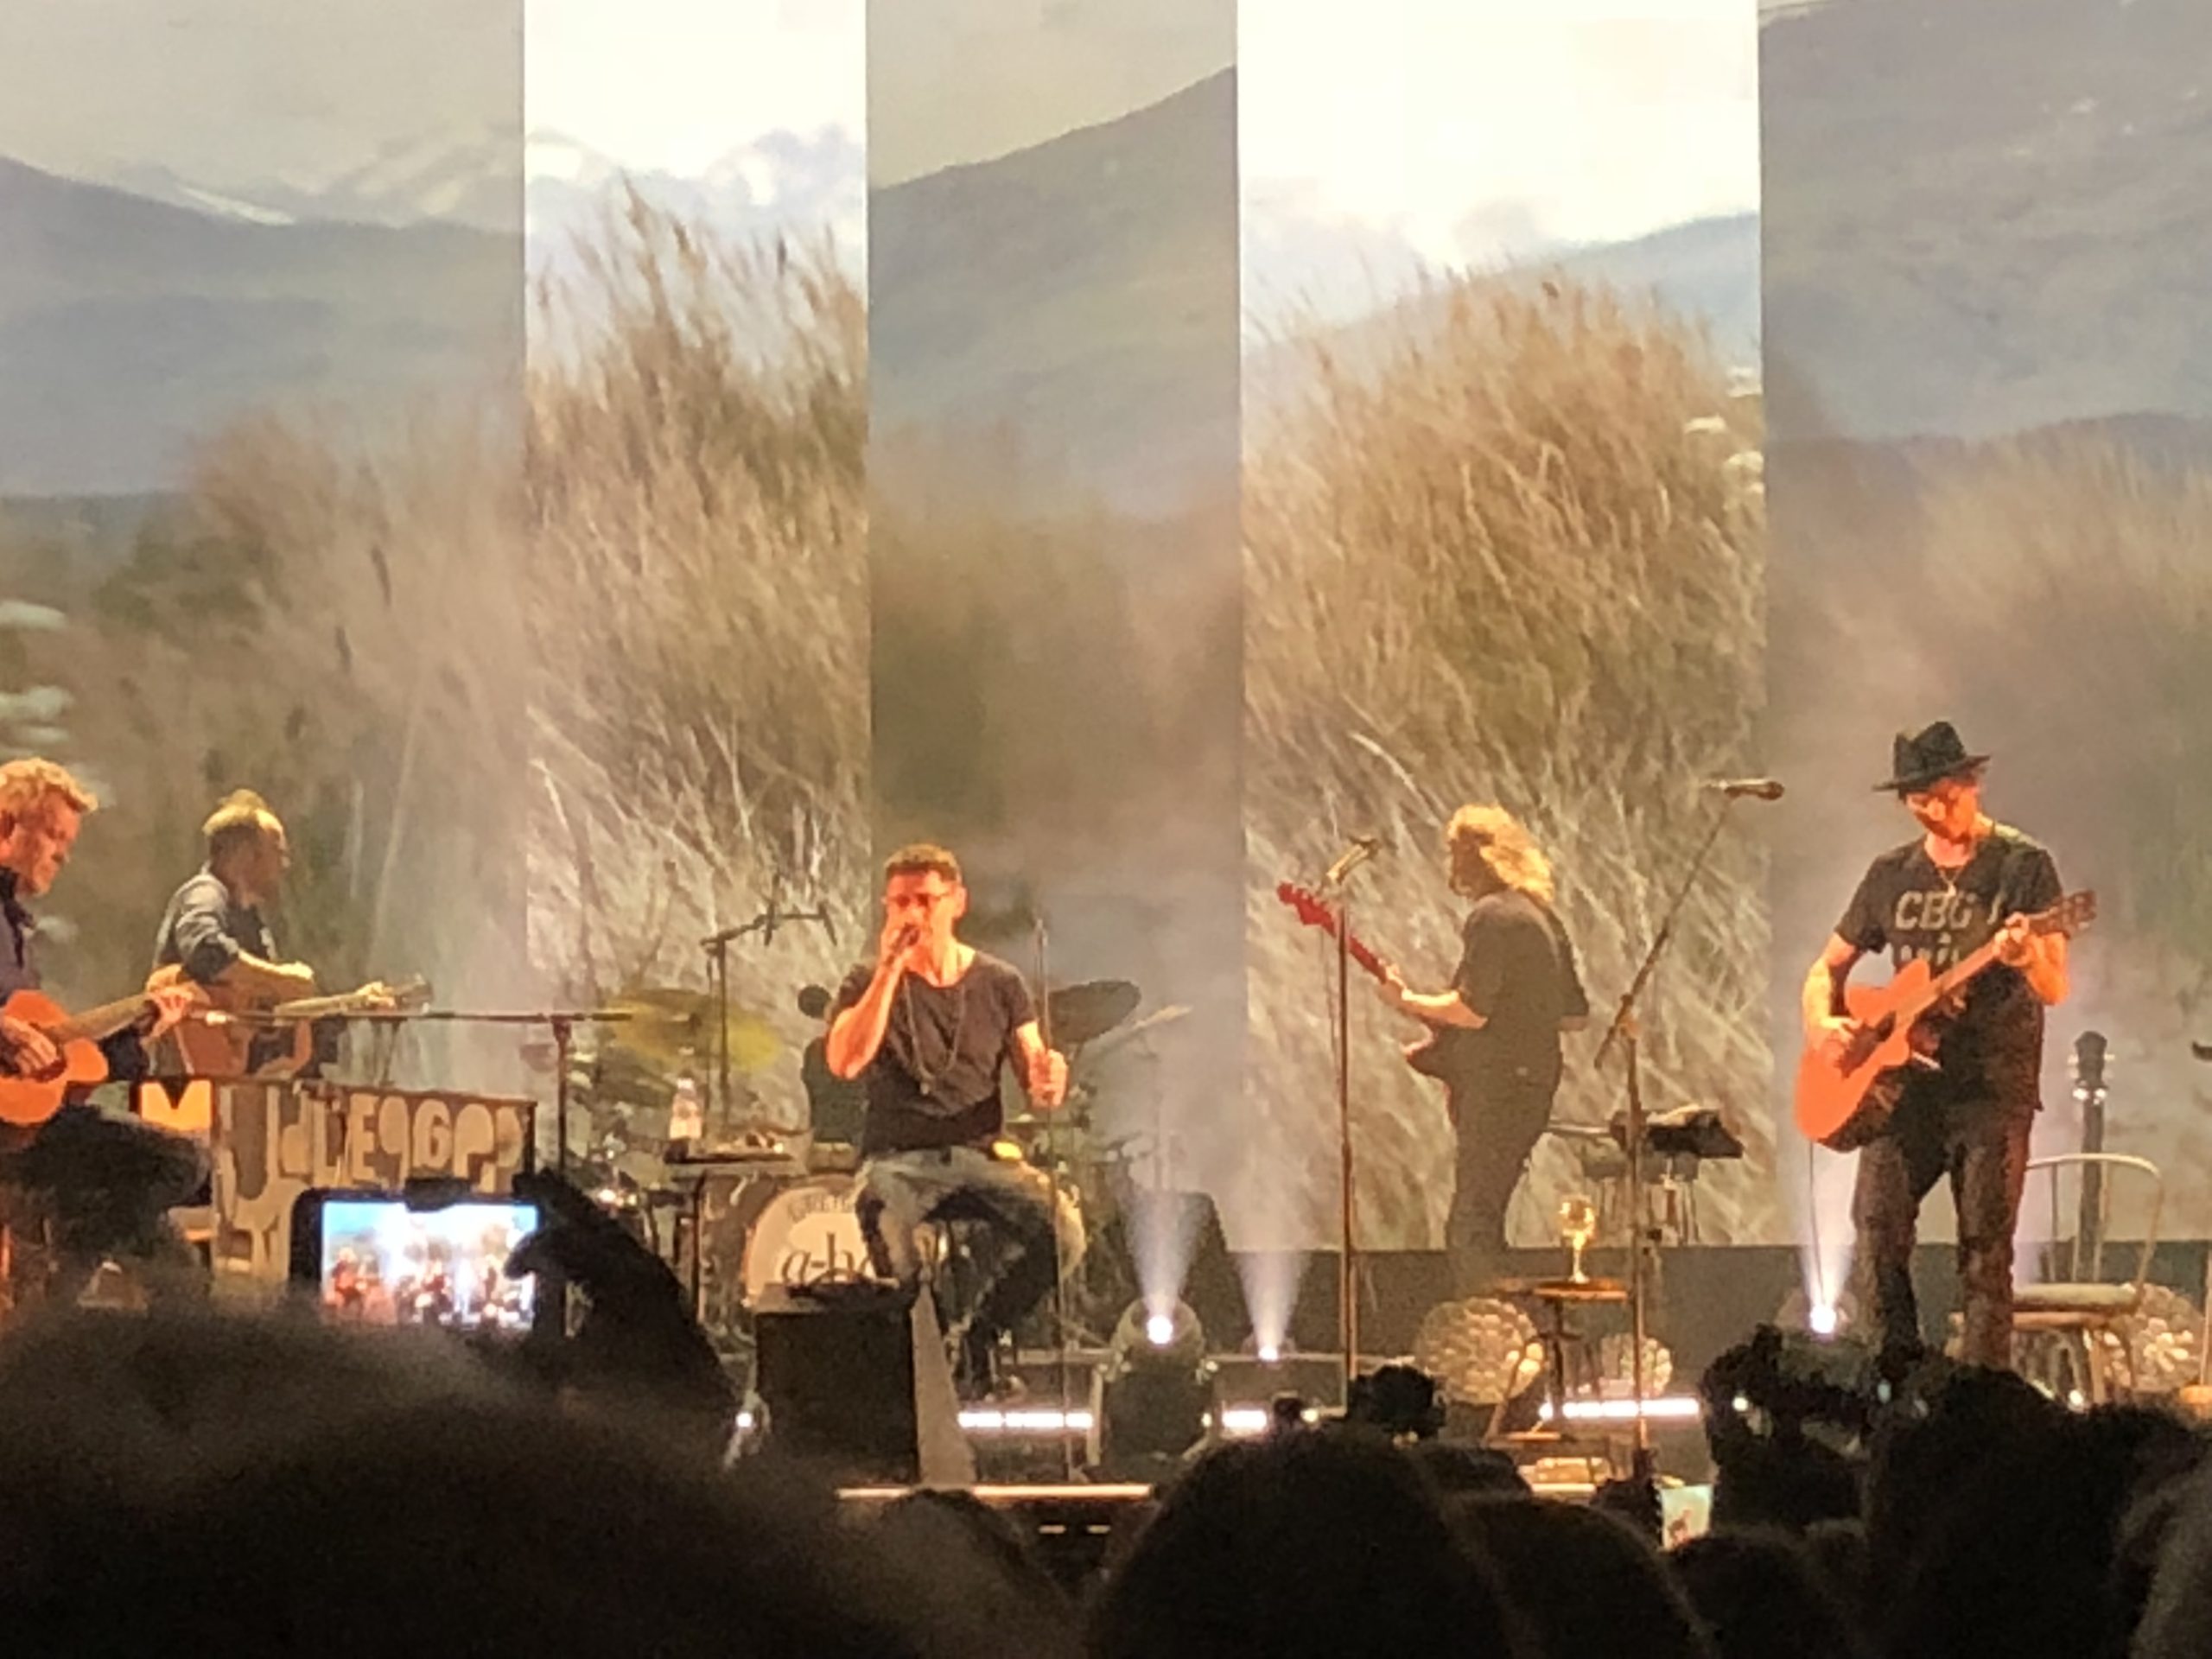 【連載】a-ha MTV Unplugged Tour (2018/オスロ) 　-4-　ライブ1日目後半